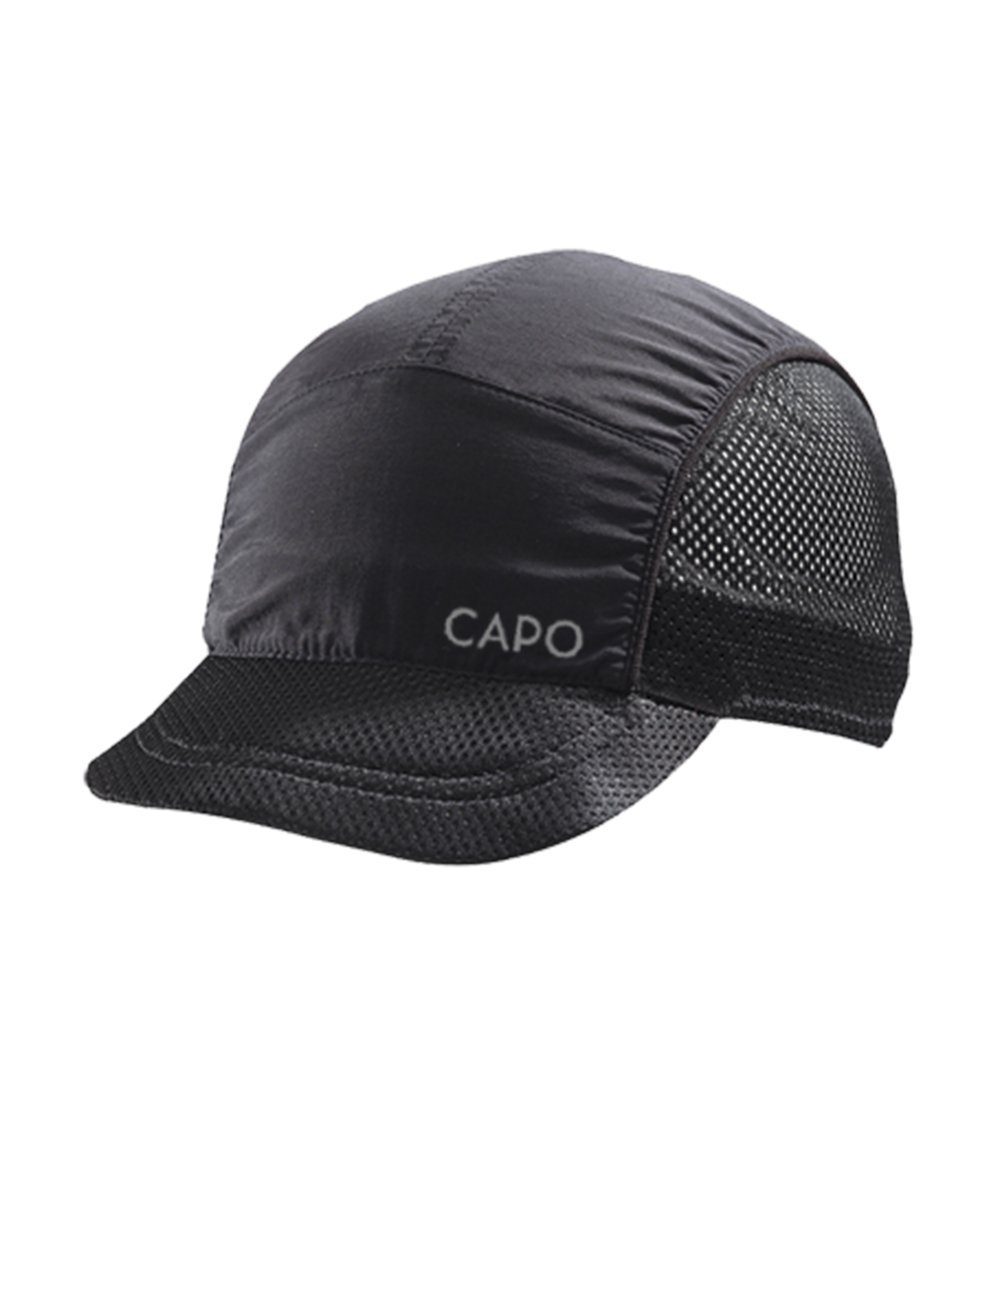 Refle CAPO Made in Cap Europe ultraleicht Baseball Softcap, seitliche Netzeinsätze,